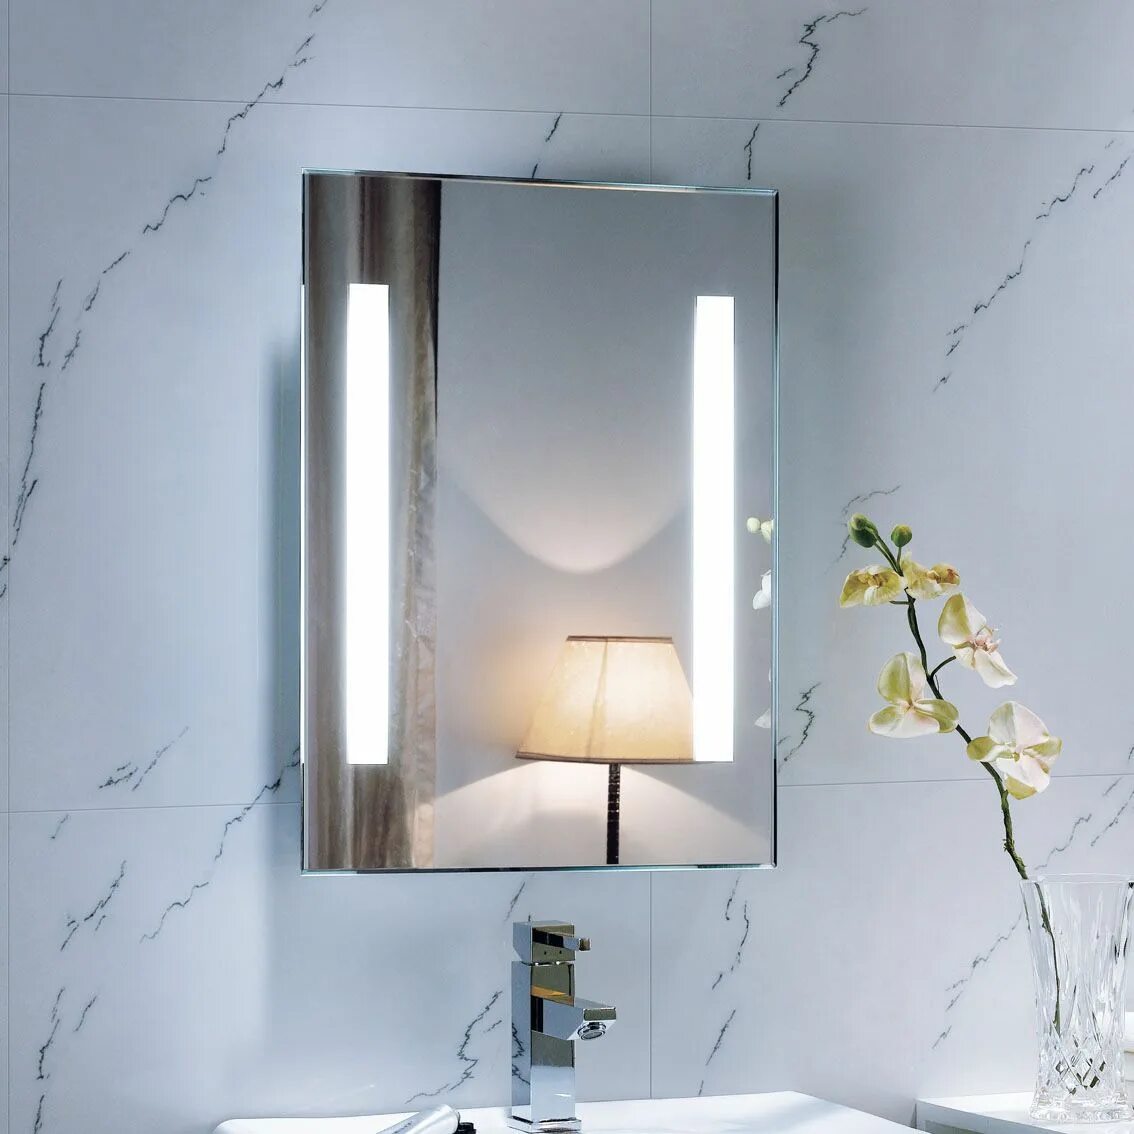 Подвесное зеркало для ванной. Оригинальные зеркала в ванную. Необычное зеркало в ванную. Зеркало с подсветкой маленькое. Необычное зеркало в ванной.